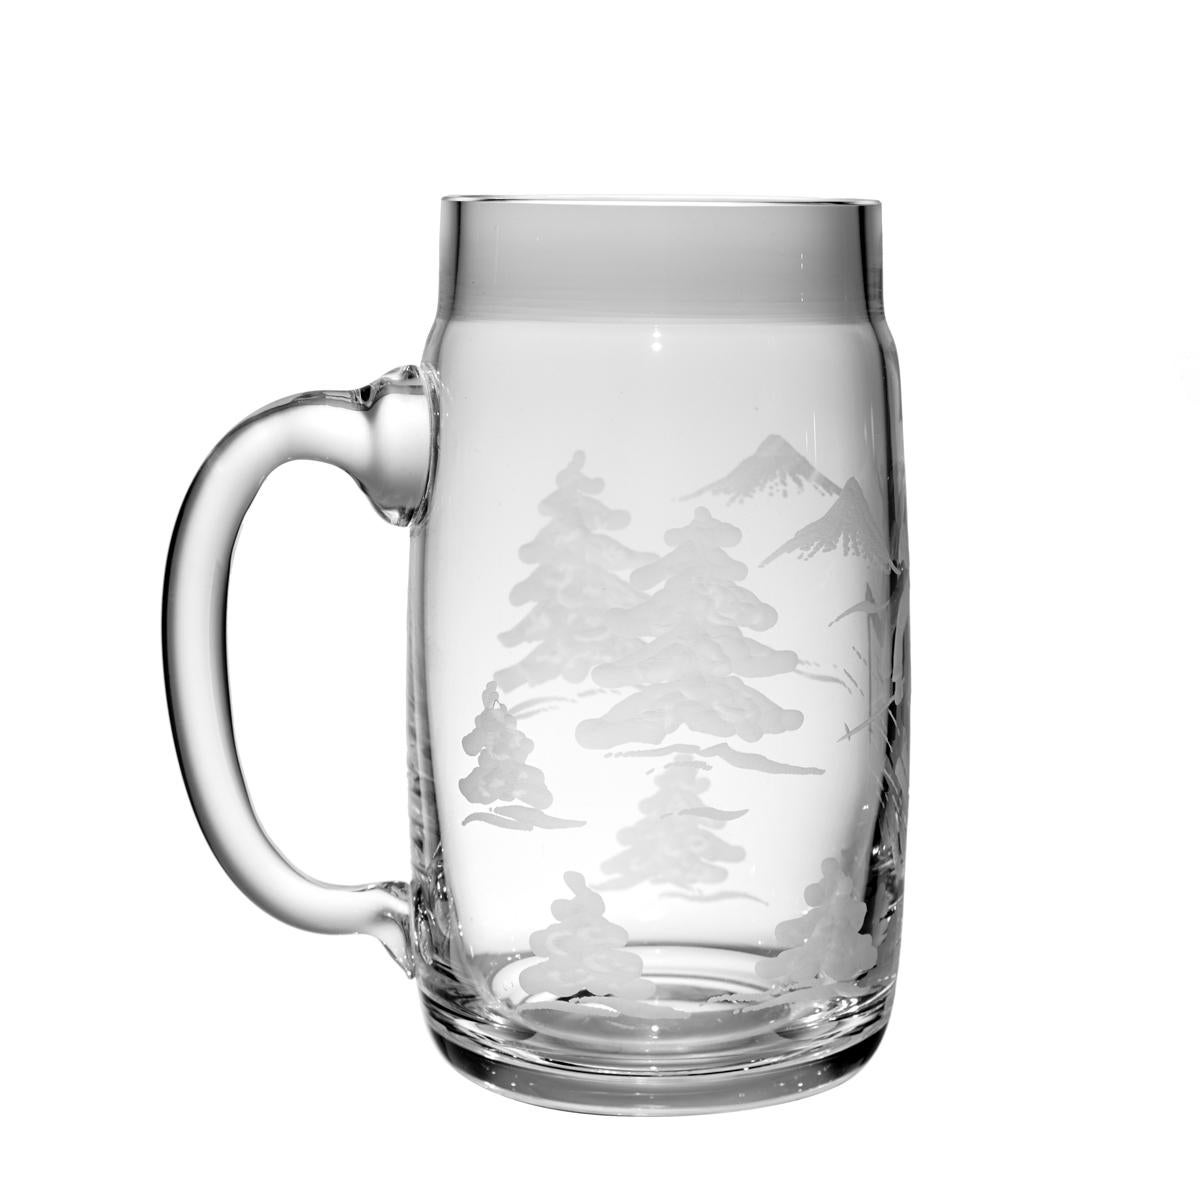 Verre à bière de style campagnard appelé Bierseidl en verre cristal clair. Soufflé à la main en Bavière et gravé à la main avec des arbres et un garçon skieur pour une bière de 0,7 litre. Peut être commandé également avec six animaux de chasse